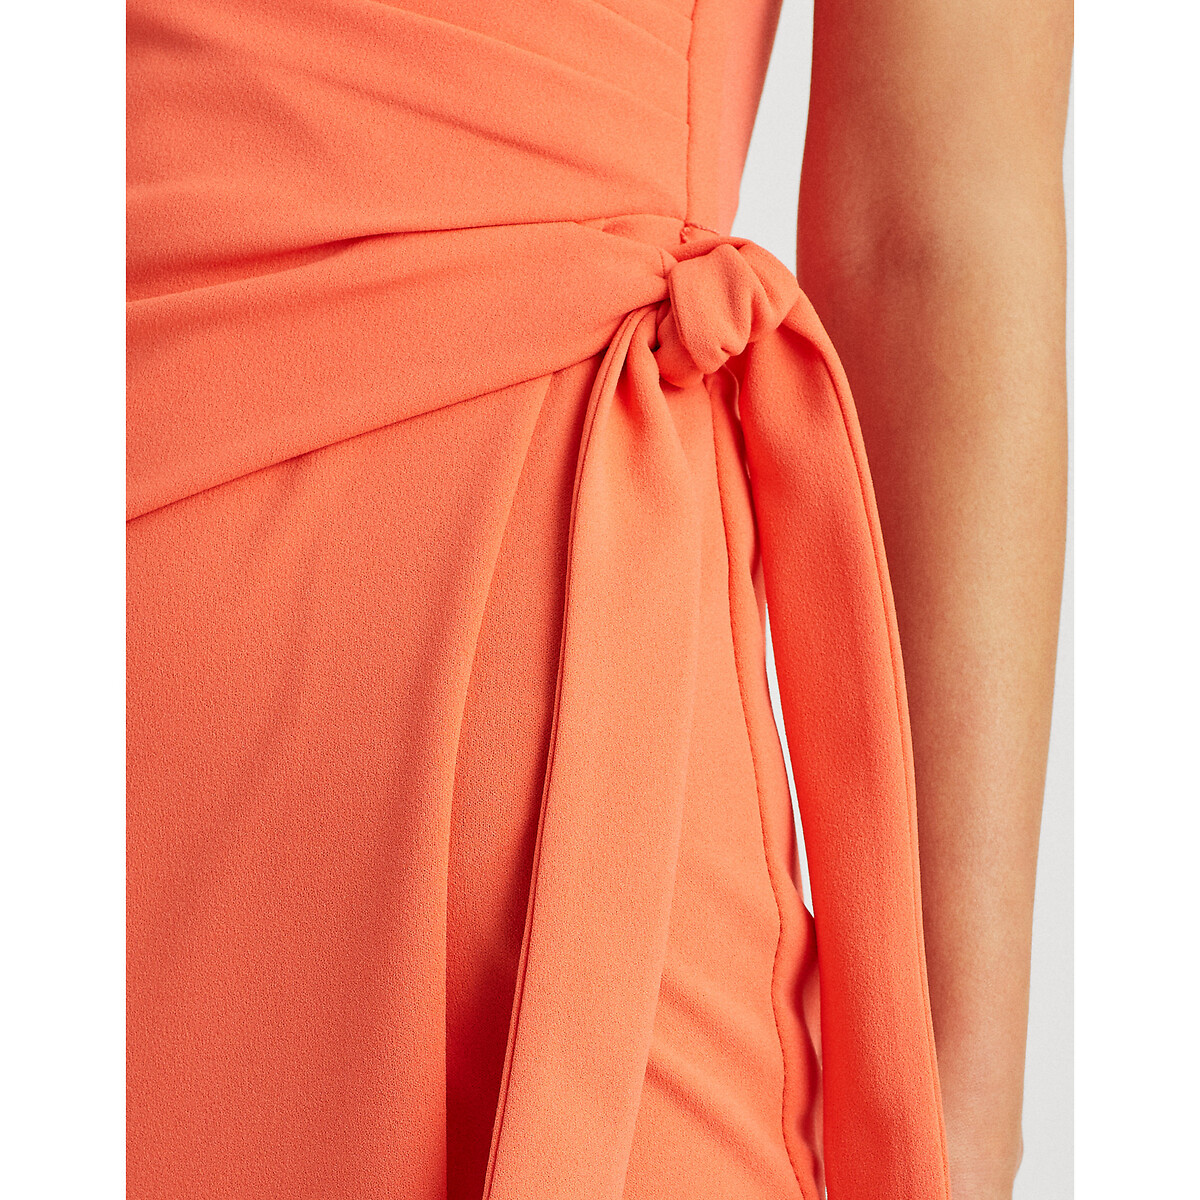 Платье LaRedoute Короткое прямое с короткими рукавами 38 (FR) - 44 (RUS) оранжевый, размер 38 (FR) - 44 (RUS) Короткое прямое с короткими рукавами 38 (FR) - 44 (RUS) оранжевый - фото 4